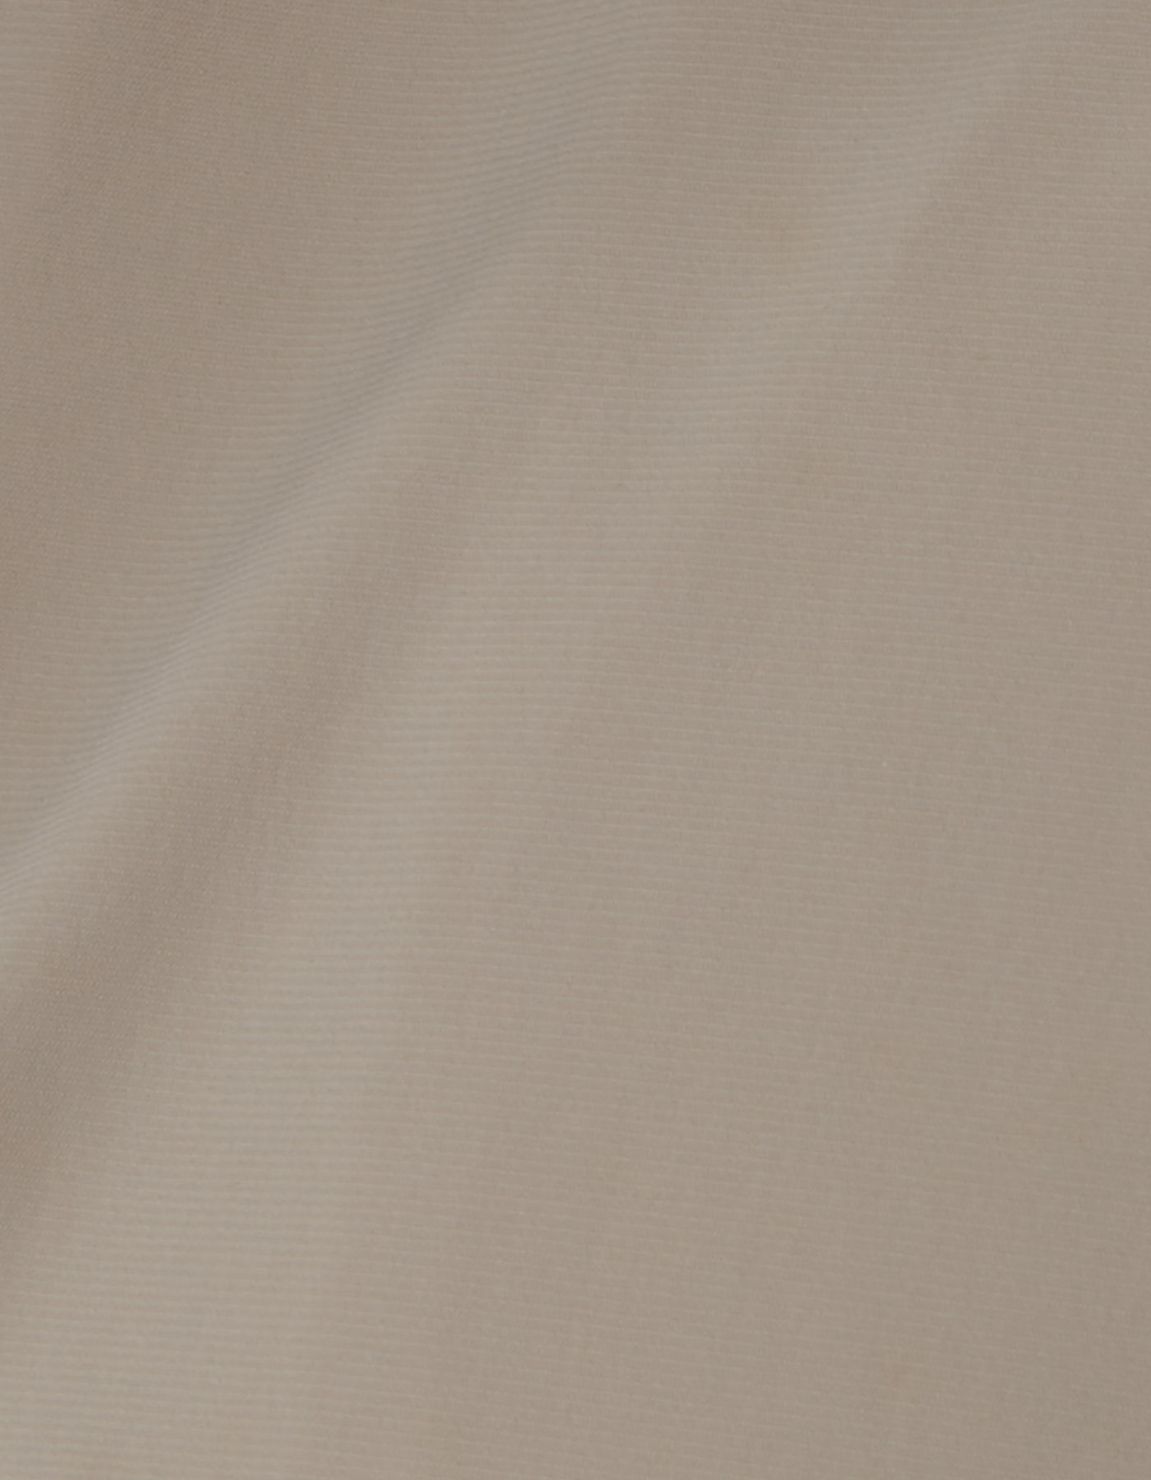 Camisa Cuello italiano Liso Texturizado Marrón Over 4